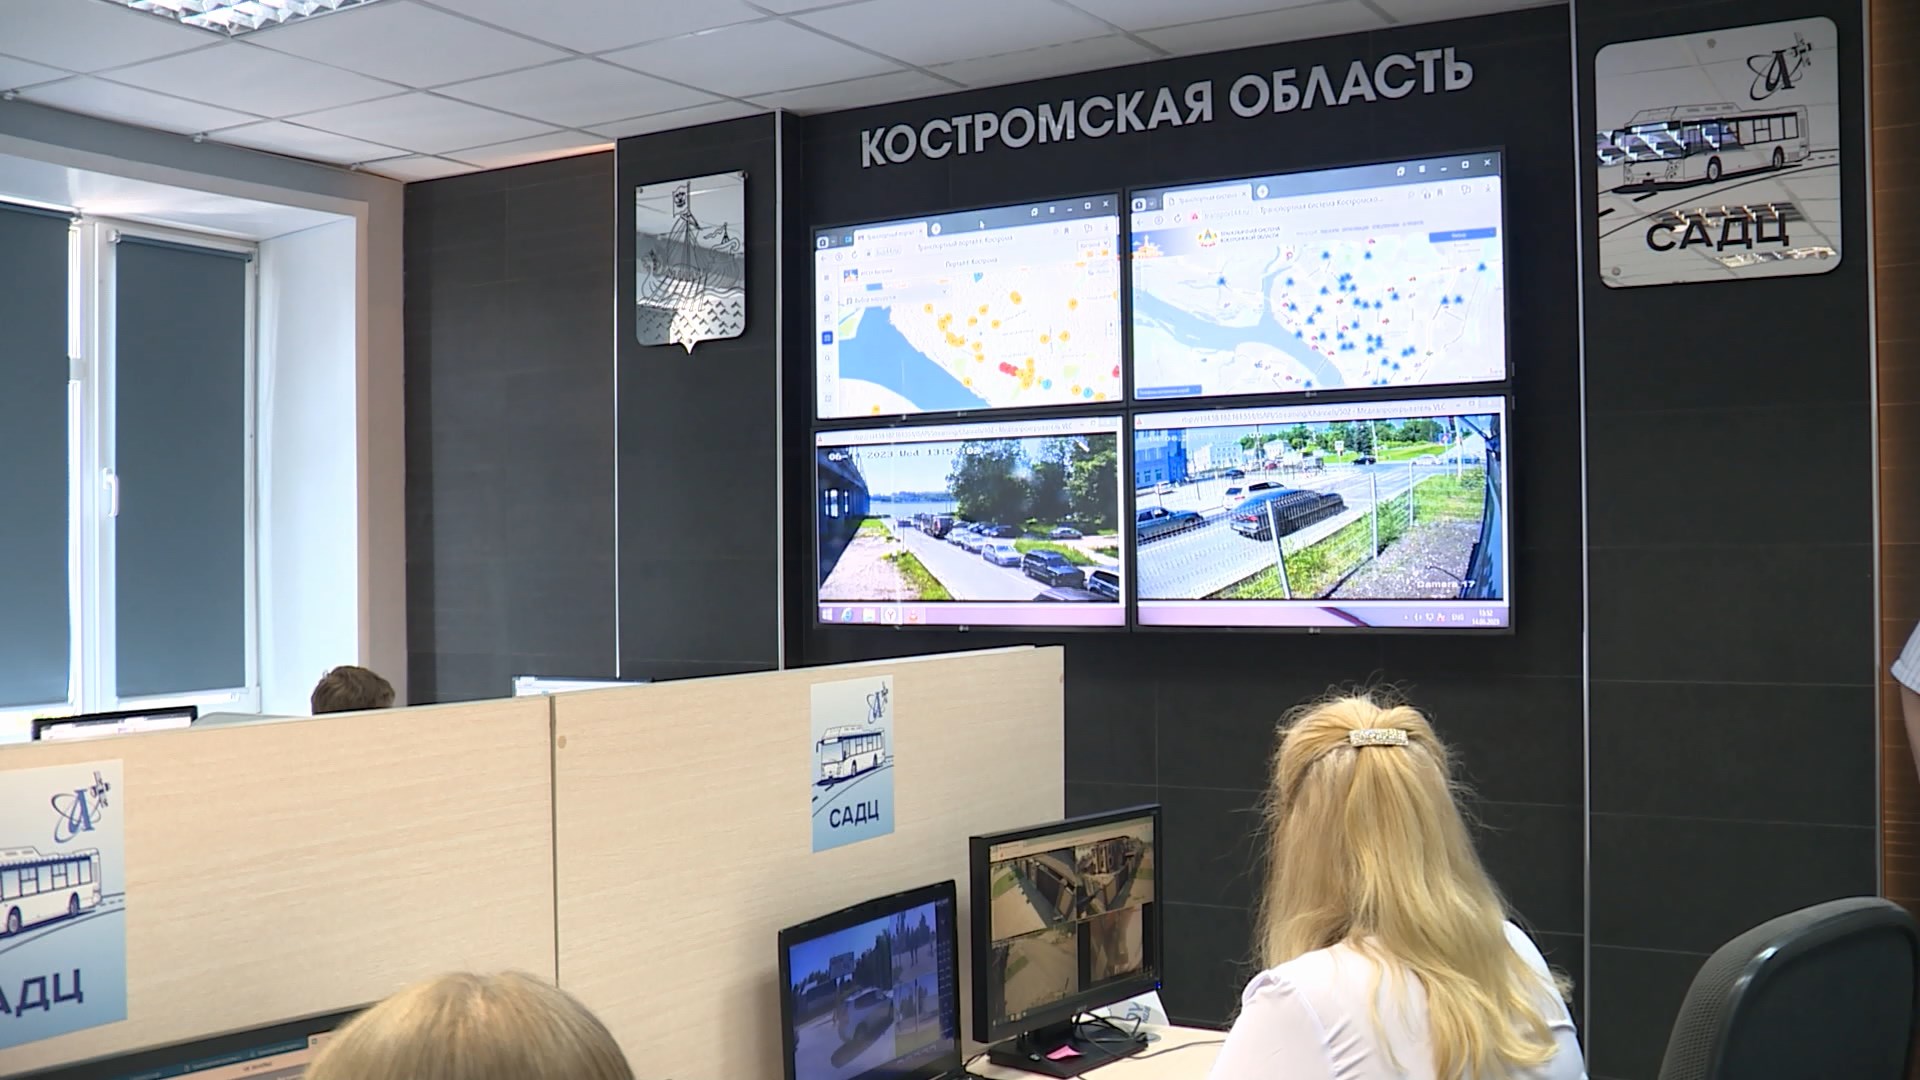 Волонтеры и мобильное приложение помогут разобраться в новой схеме движения автобусов в Костроме